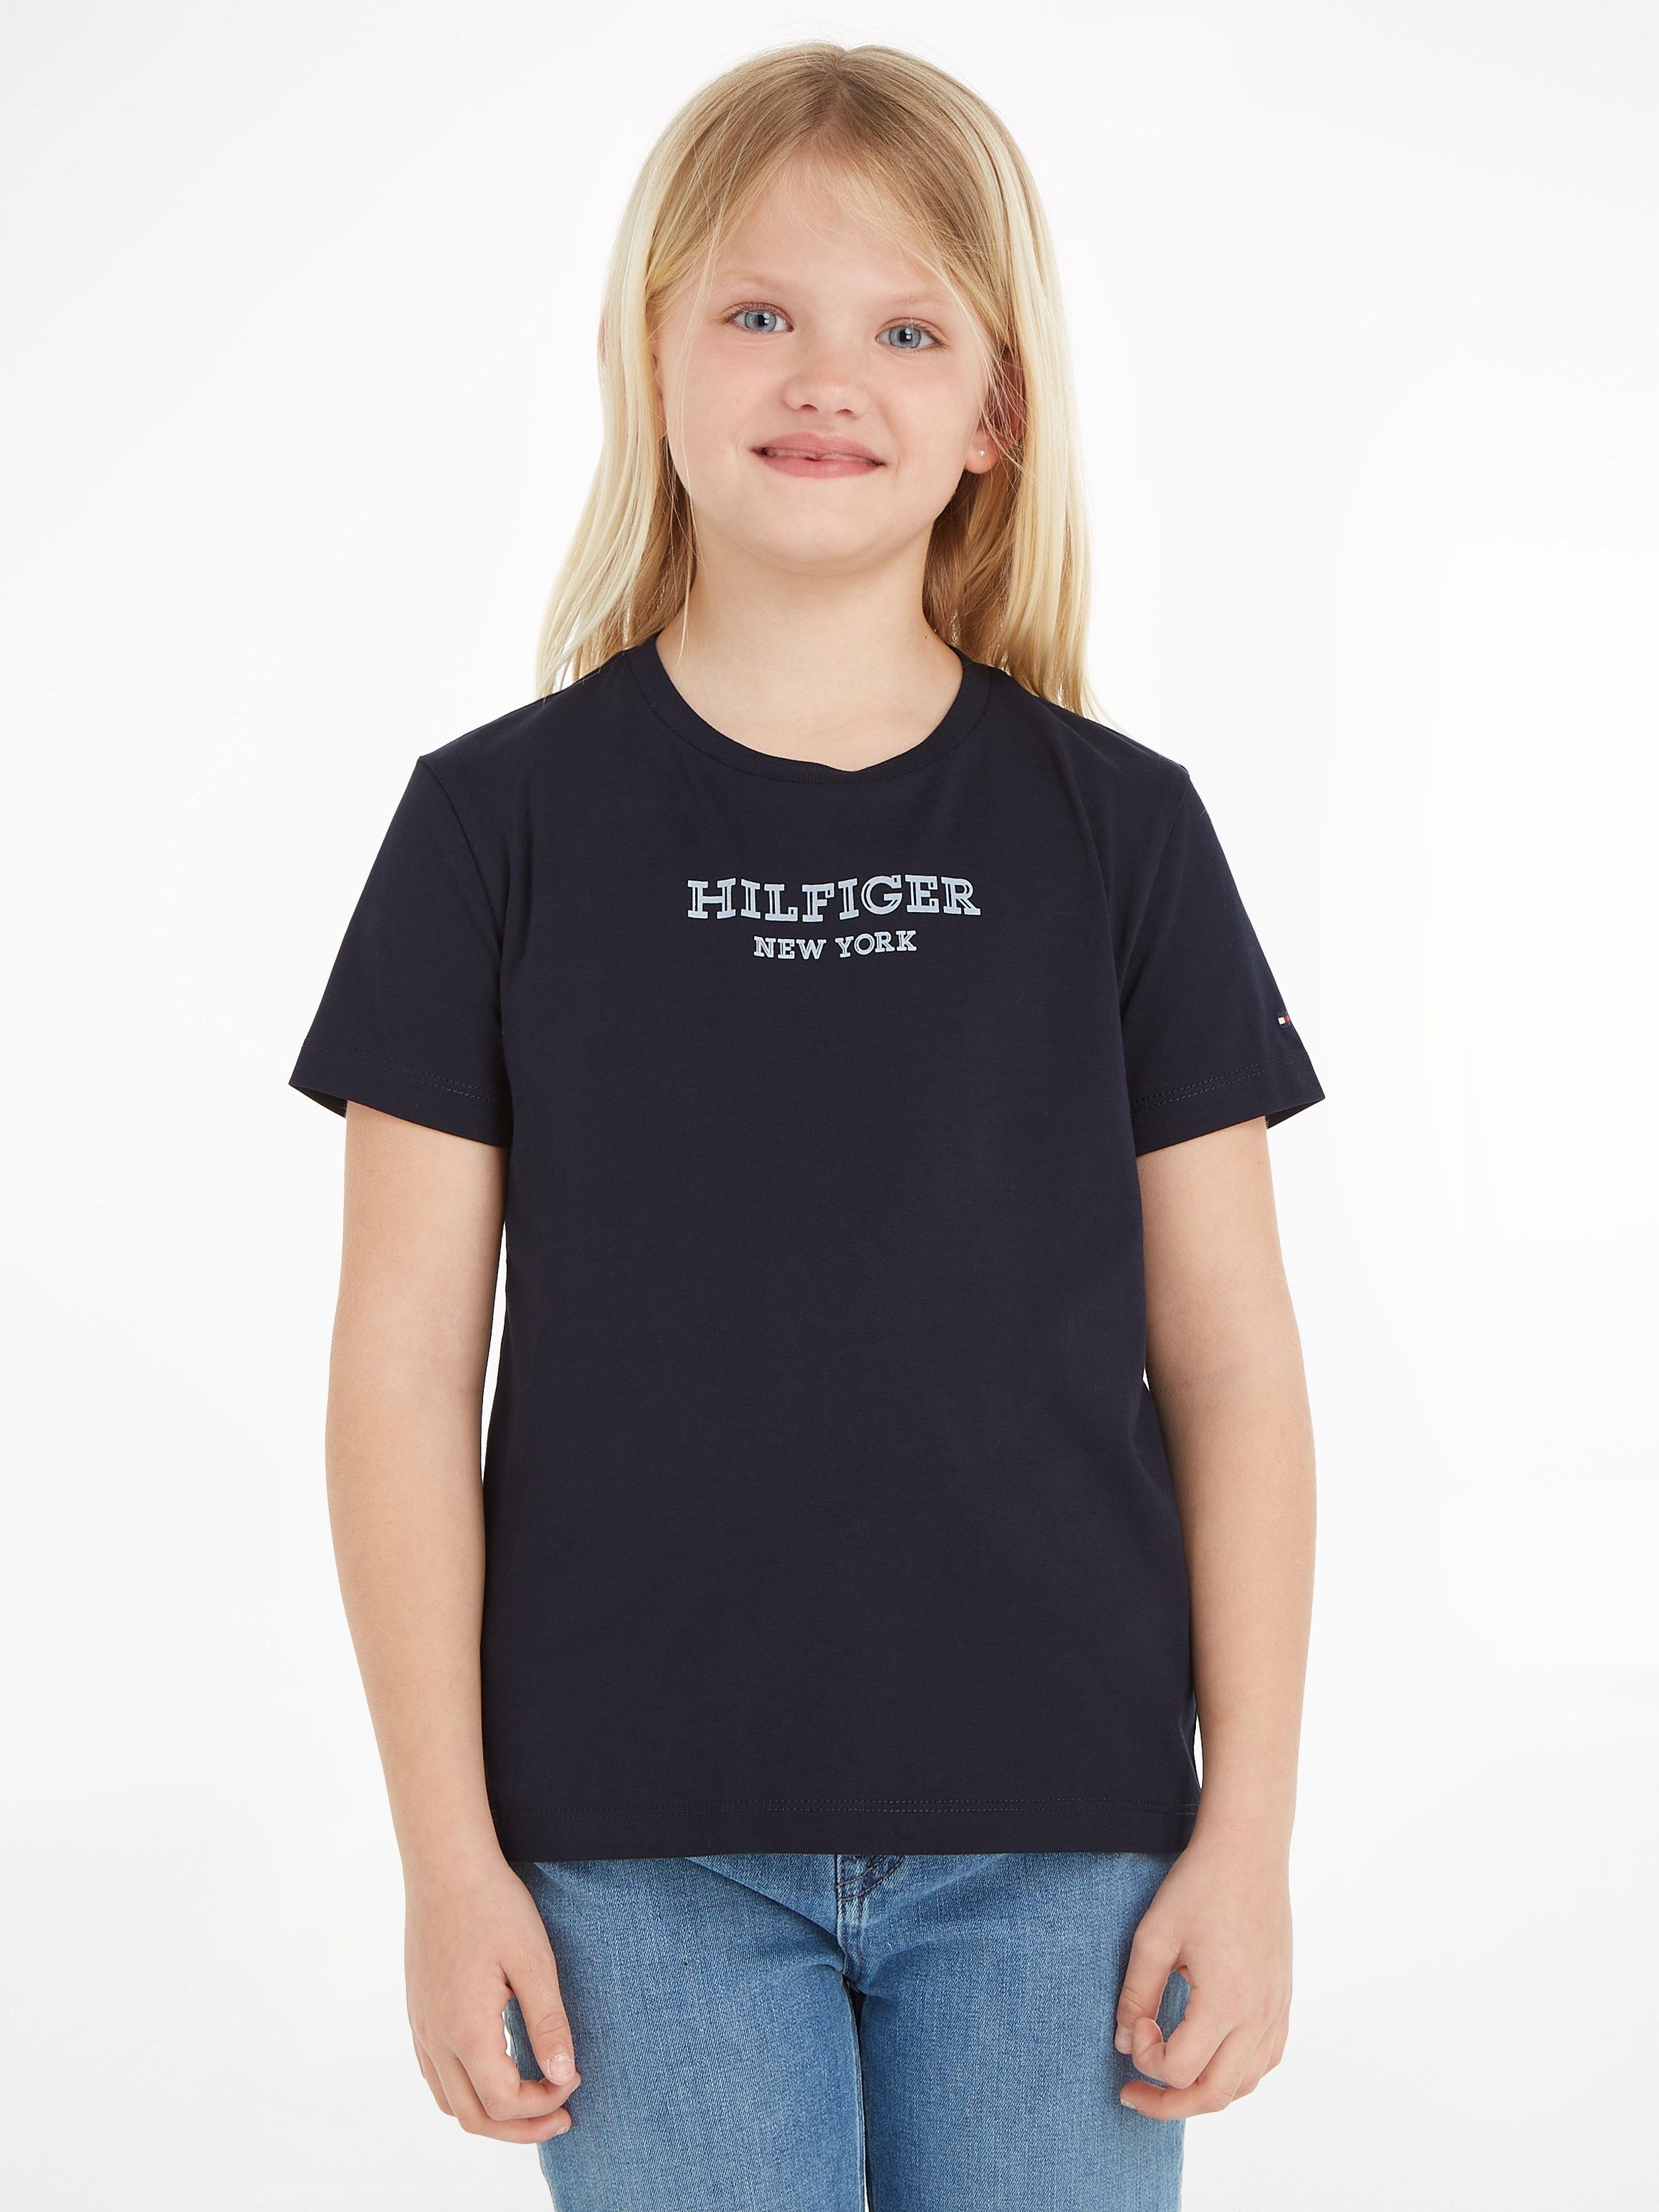 Tommy Hilfiger T-shirt MONOTYPE met tekst zwart Meisjes Katoen Ronde hals 116